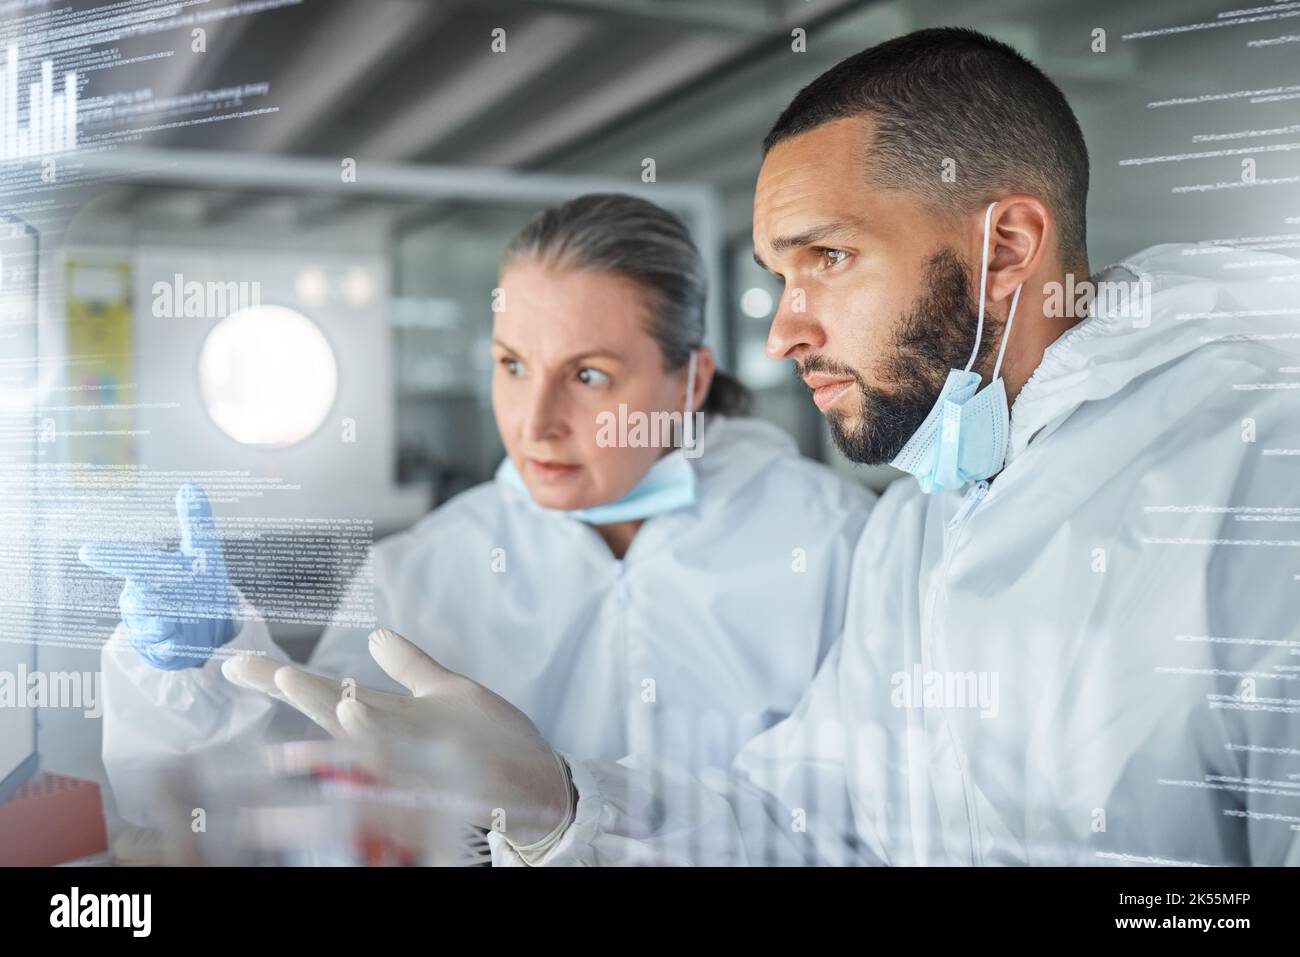 Ciencia, tecnología e investigación sobre pantallas futuristas utilizadas por científicos en un laboratorio. Innovación, transformación digital y tecnología de futuro en el sector sanitario Foto de stock